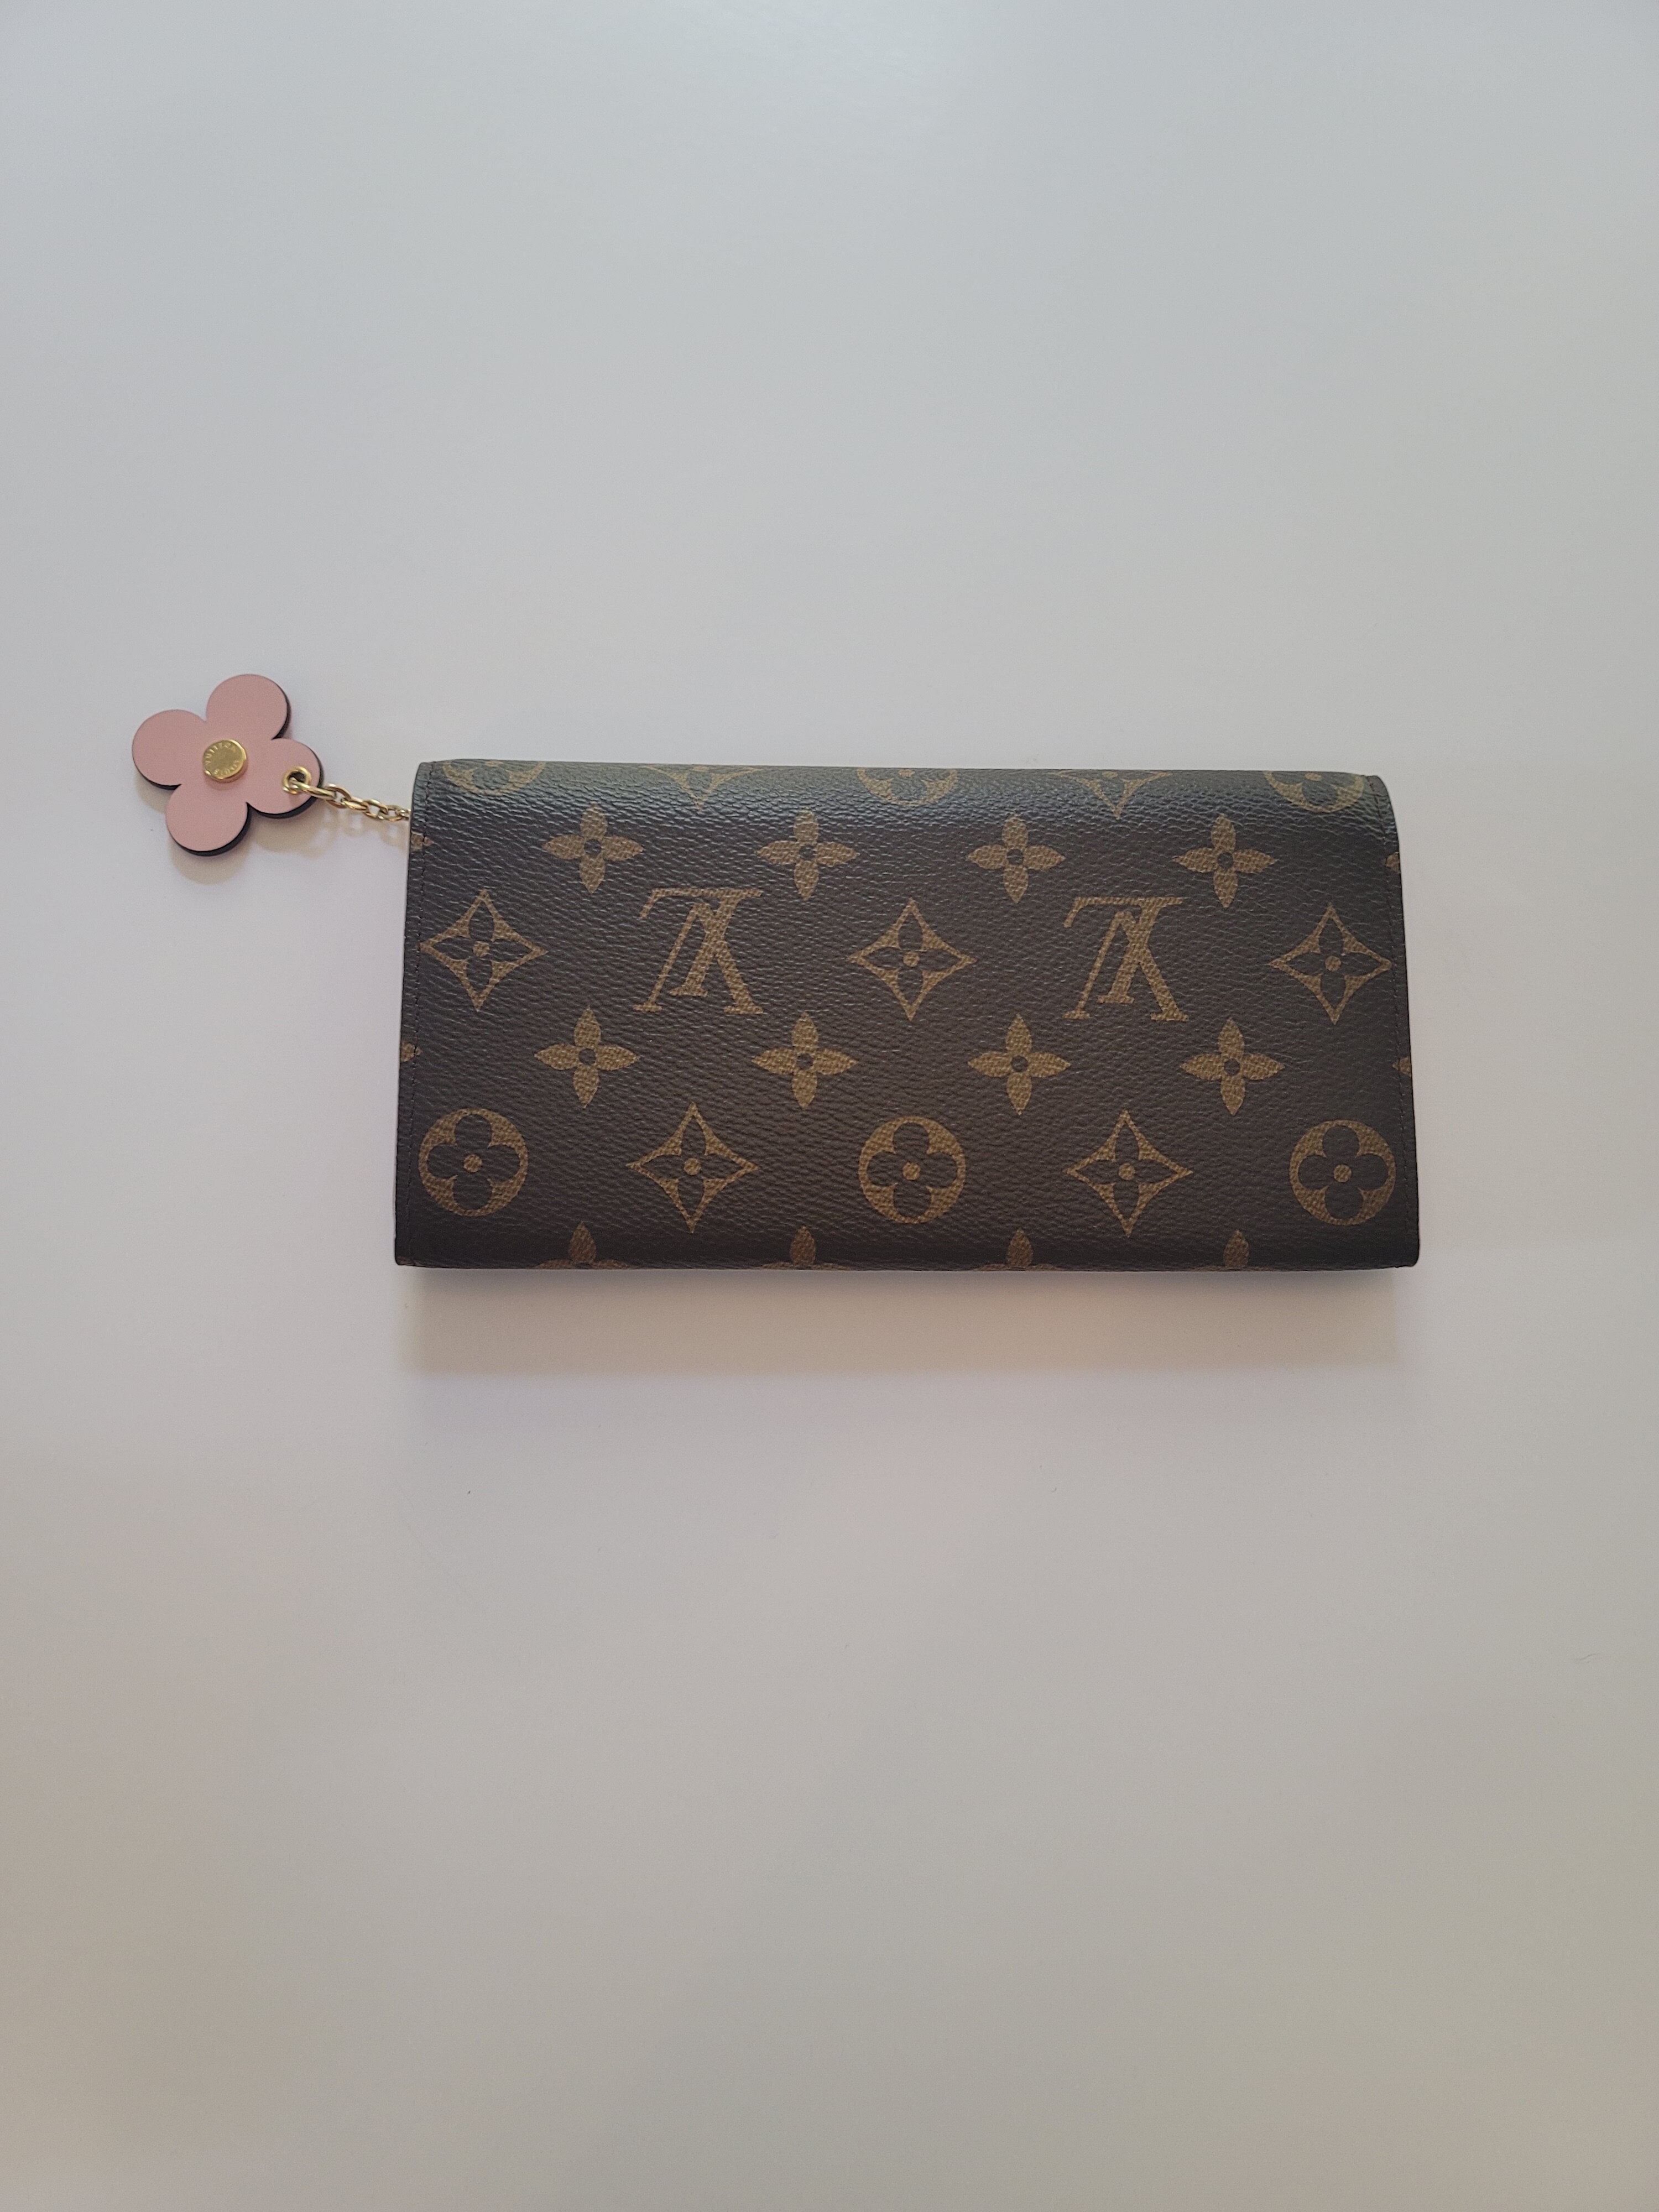 Louis Vuitton Emilie Flower Wallet NEW condition